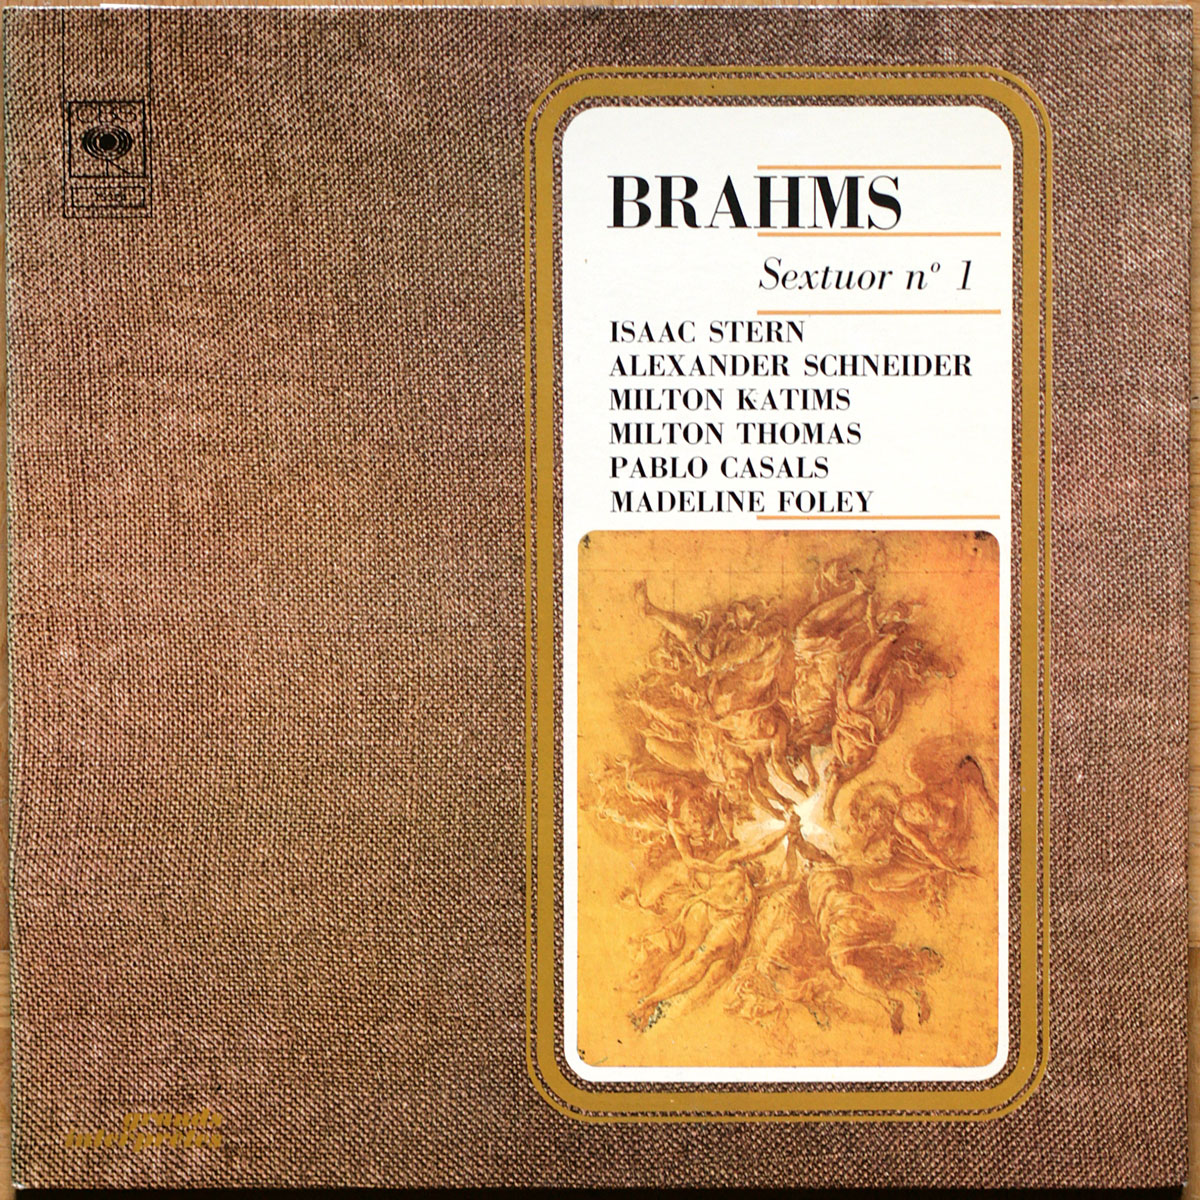 Brahms • Sextuor à cordes n° 1 • Streichsextett Nr. 1 • String Sextet No. 1 • CBS 75324 • Pablo Casals • Madeline Foley • Isaac Stern • Alexander Schneider • Milton Katims • Milton Thomas